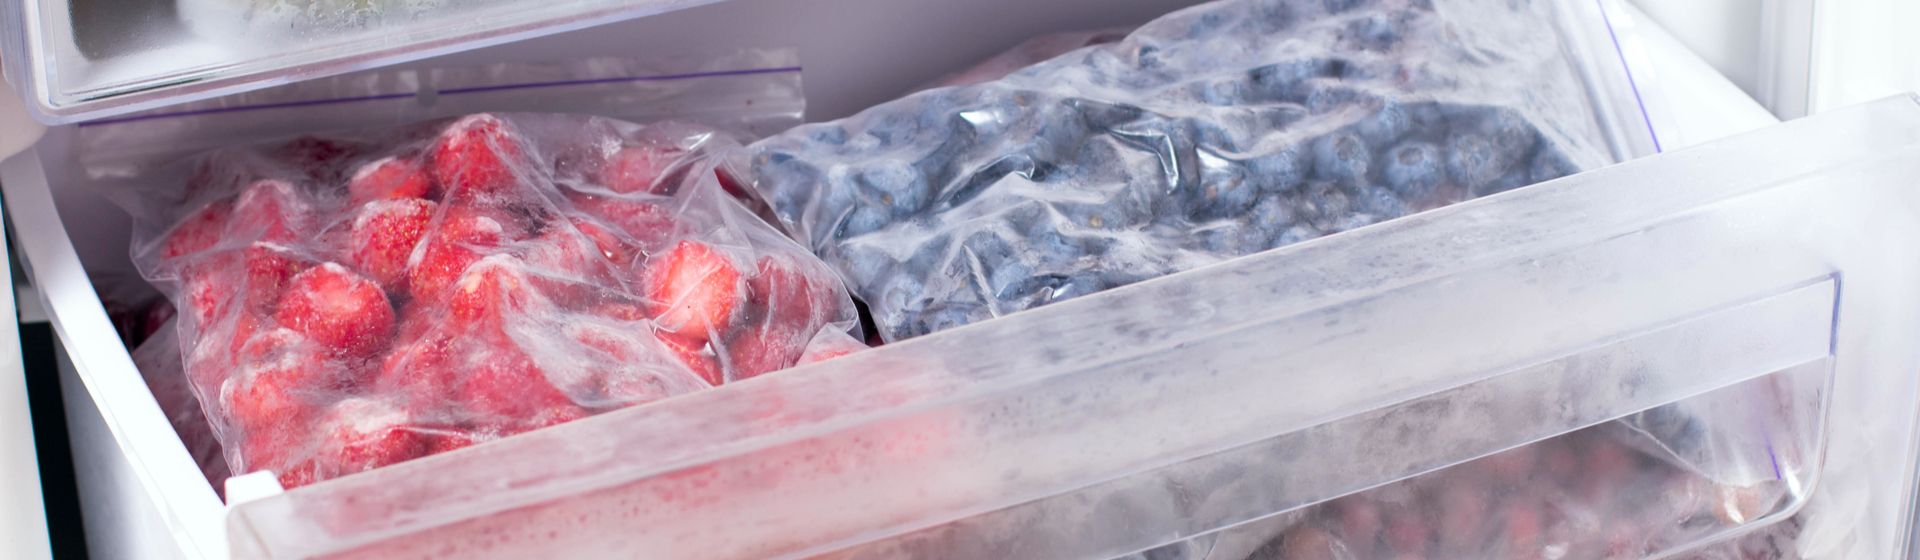 Frutas congeladas na gaveta de um freezer